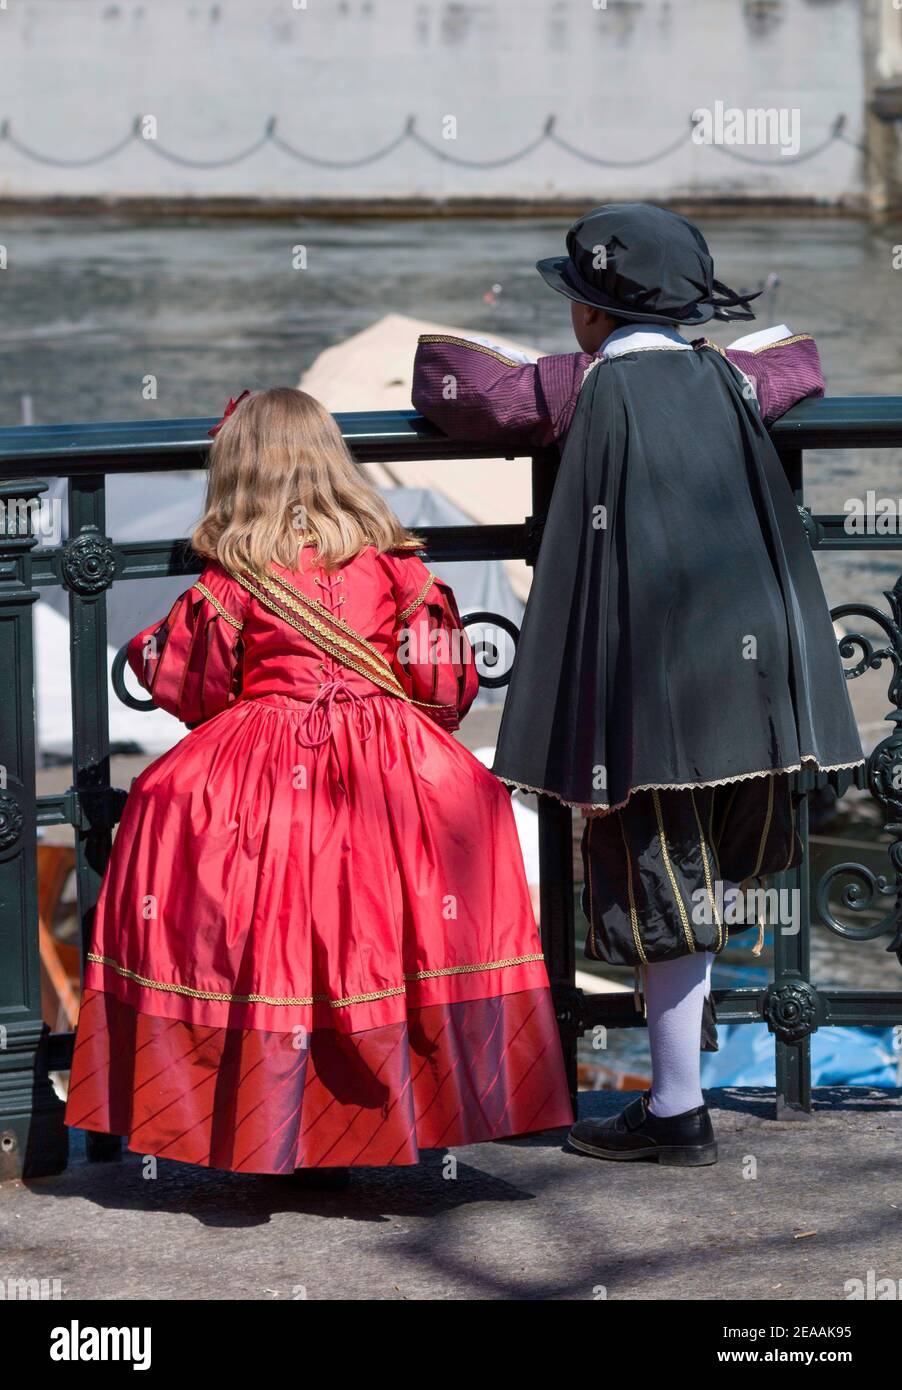 Junge junge und Mädchen Kinder von hinten verkleidet in Traditionelle barocke  Kleidung für sechselauten Parade Blick in die Ferne Stockfotografie - Alamy